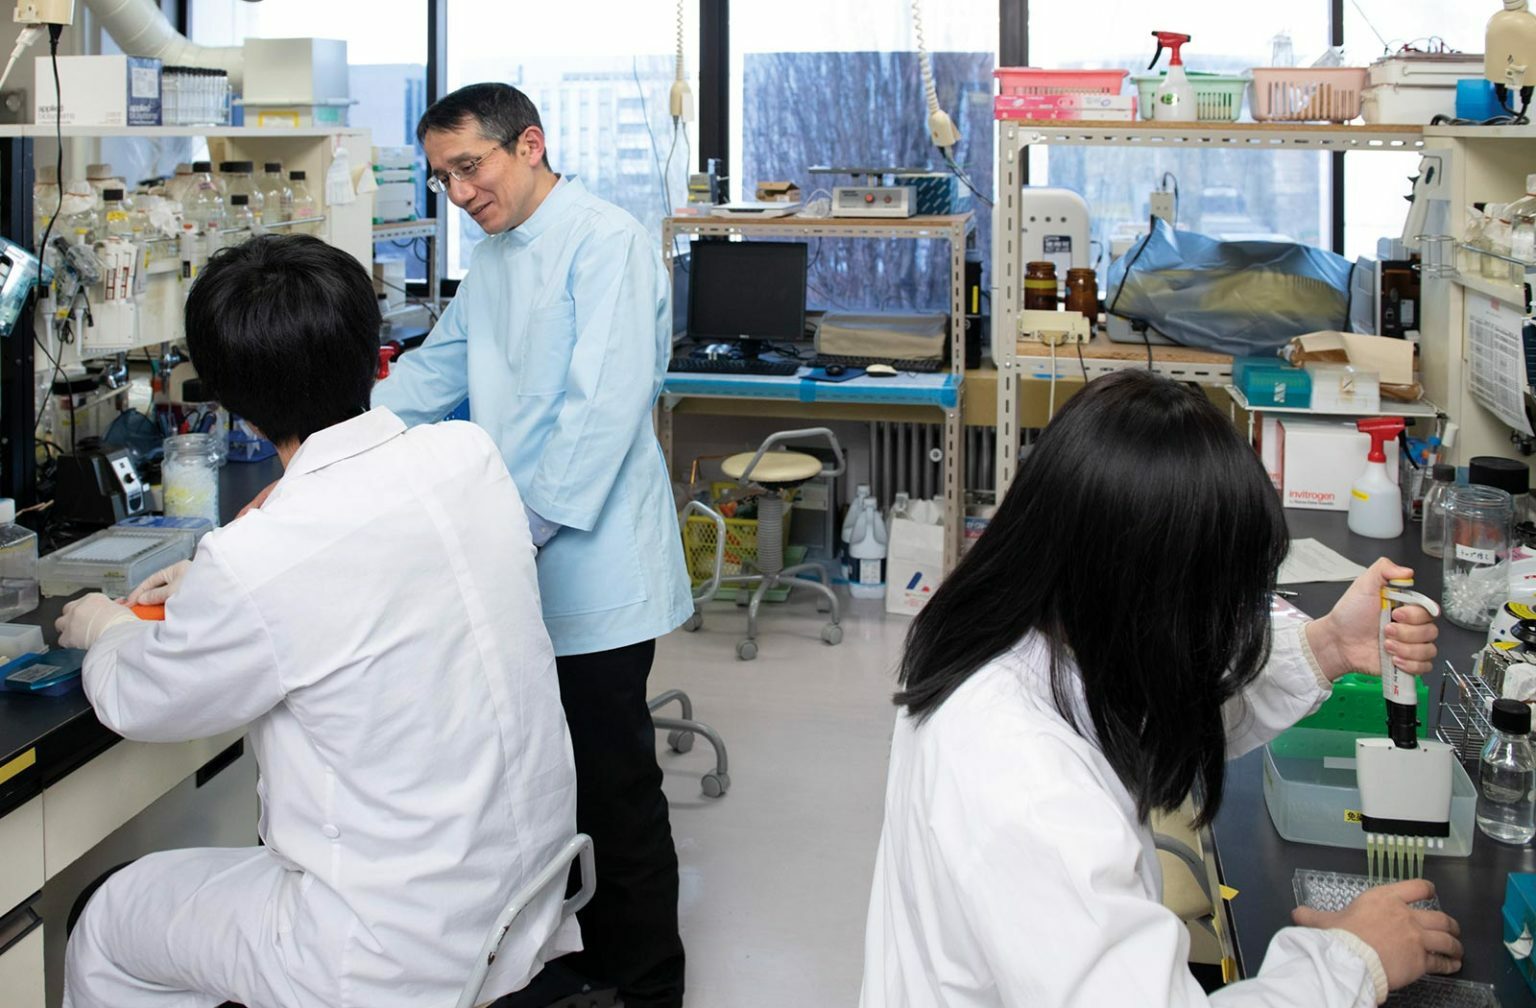 Professor Sakoda at work in his laboratory